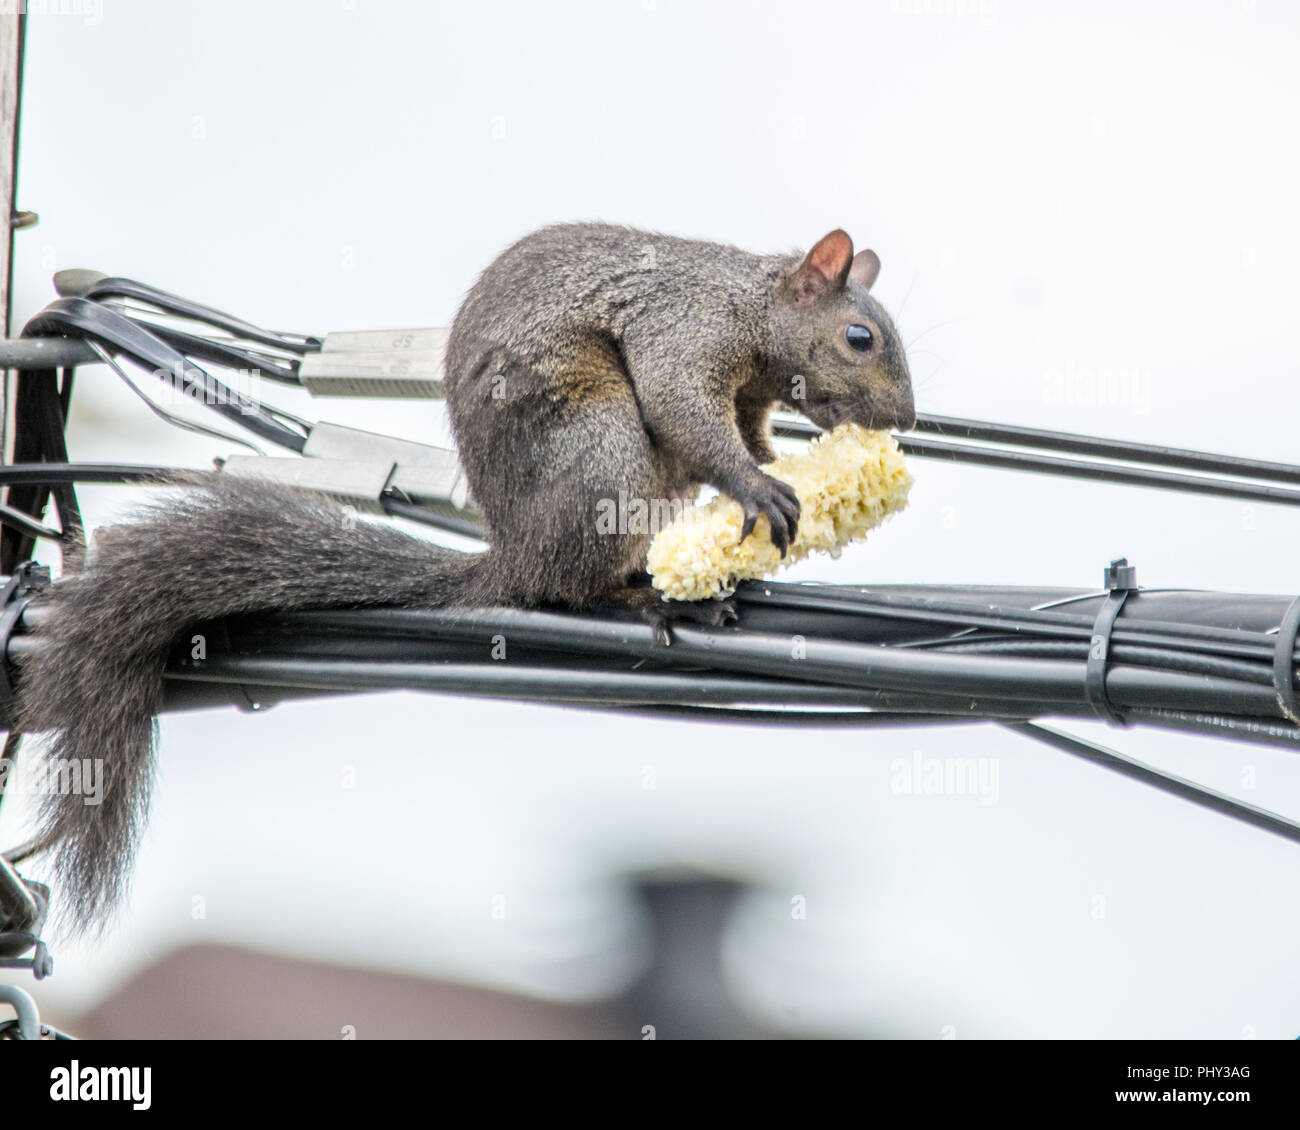 Des épis de maïs pour un écureuil agile en l'air Banque D'Images